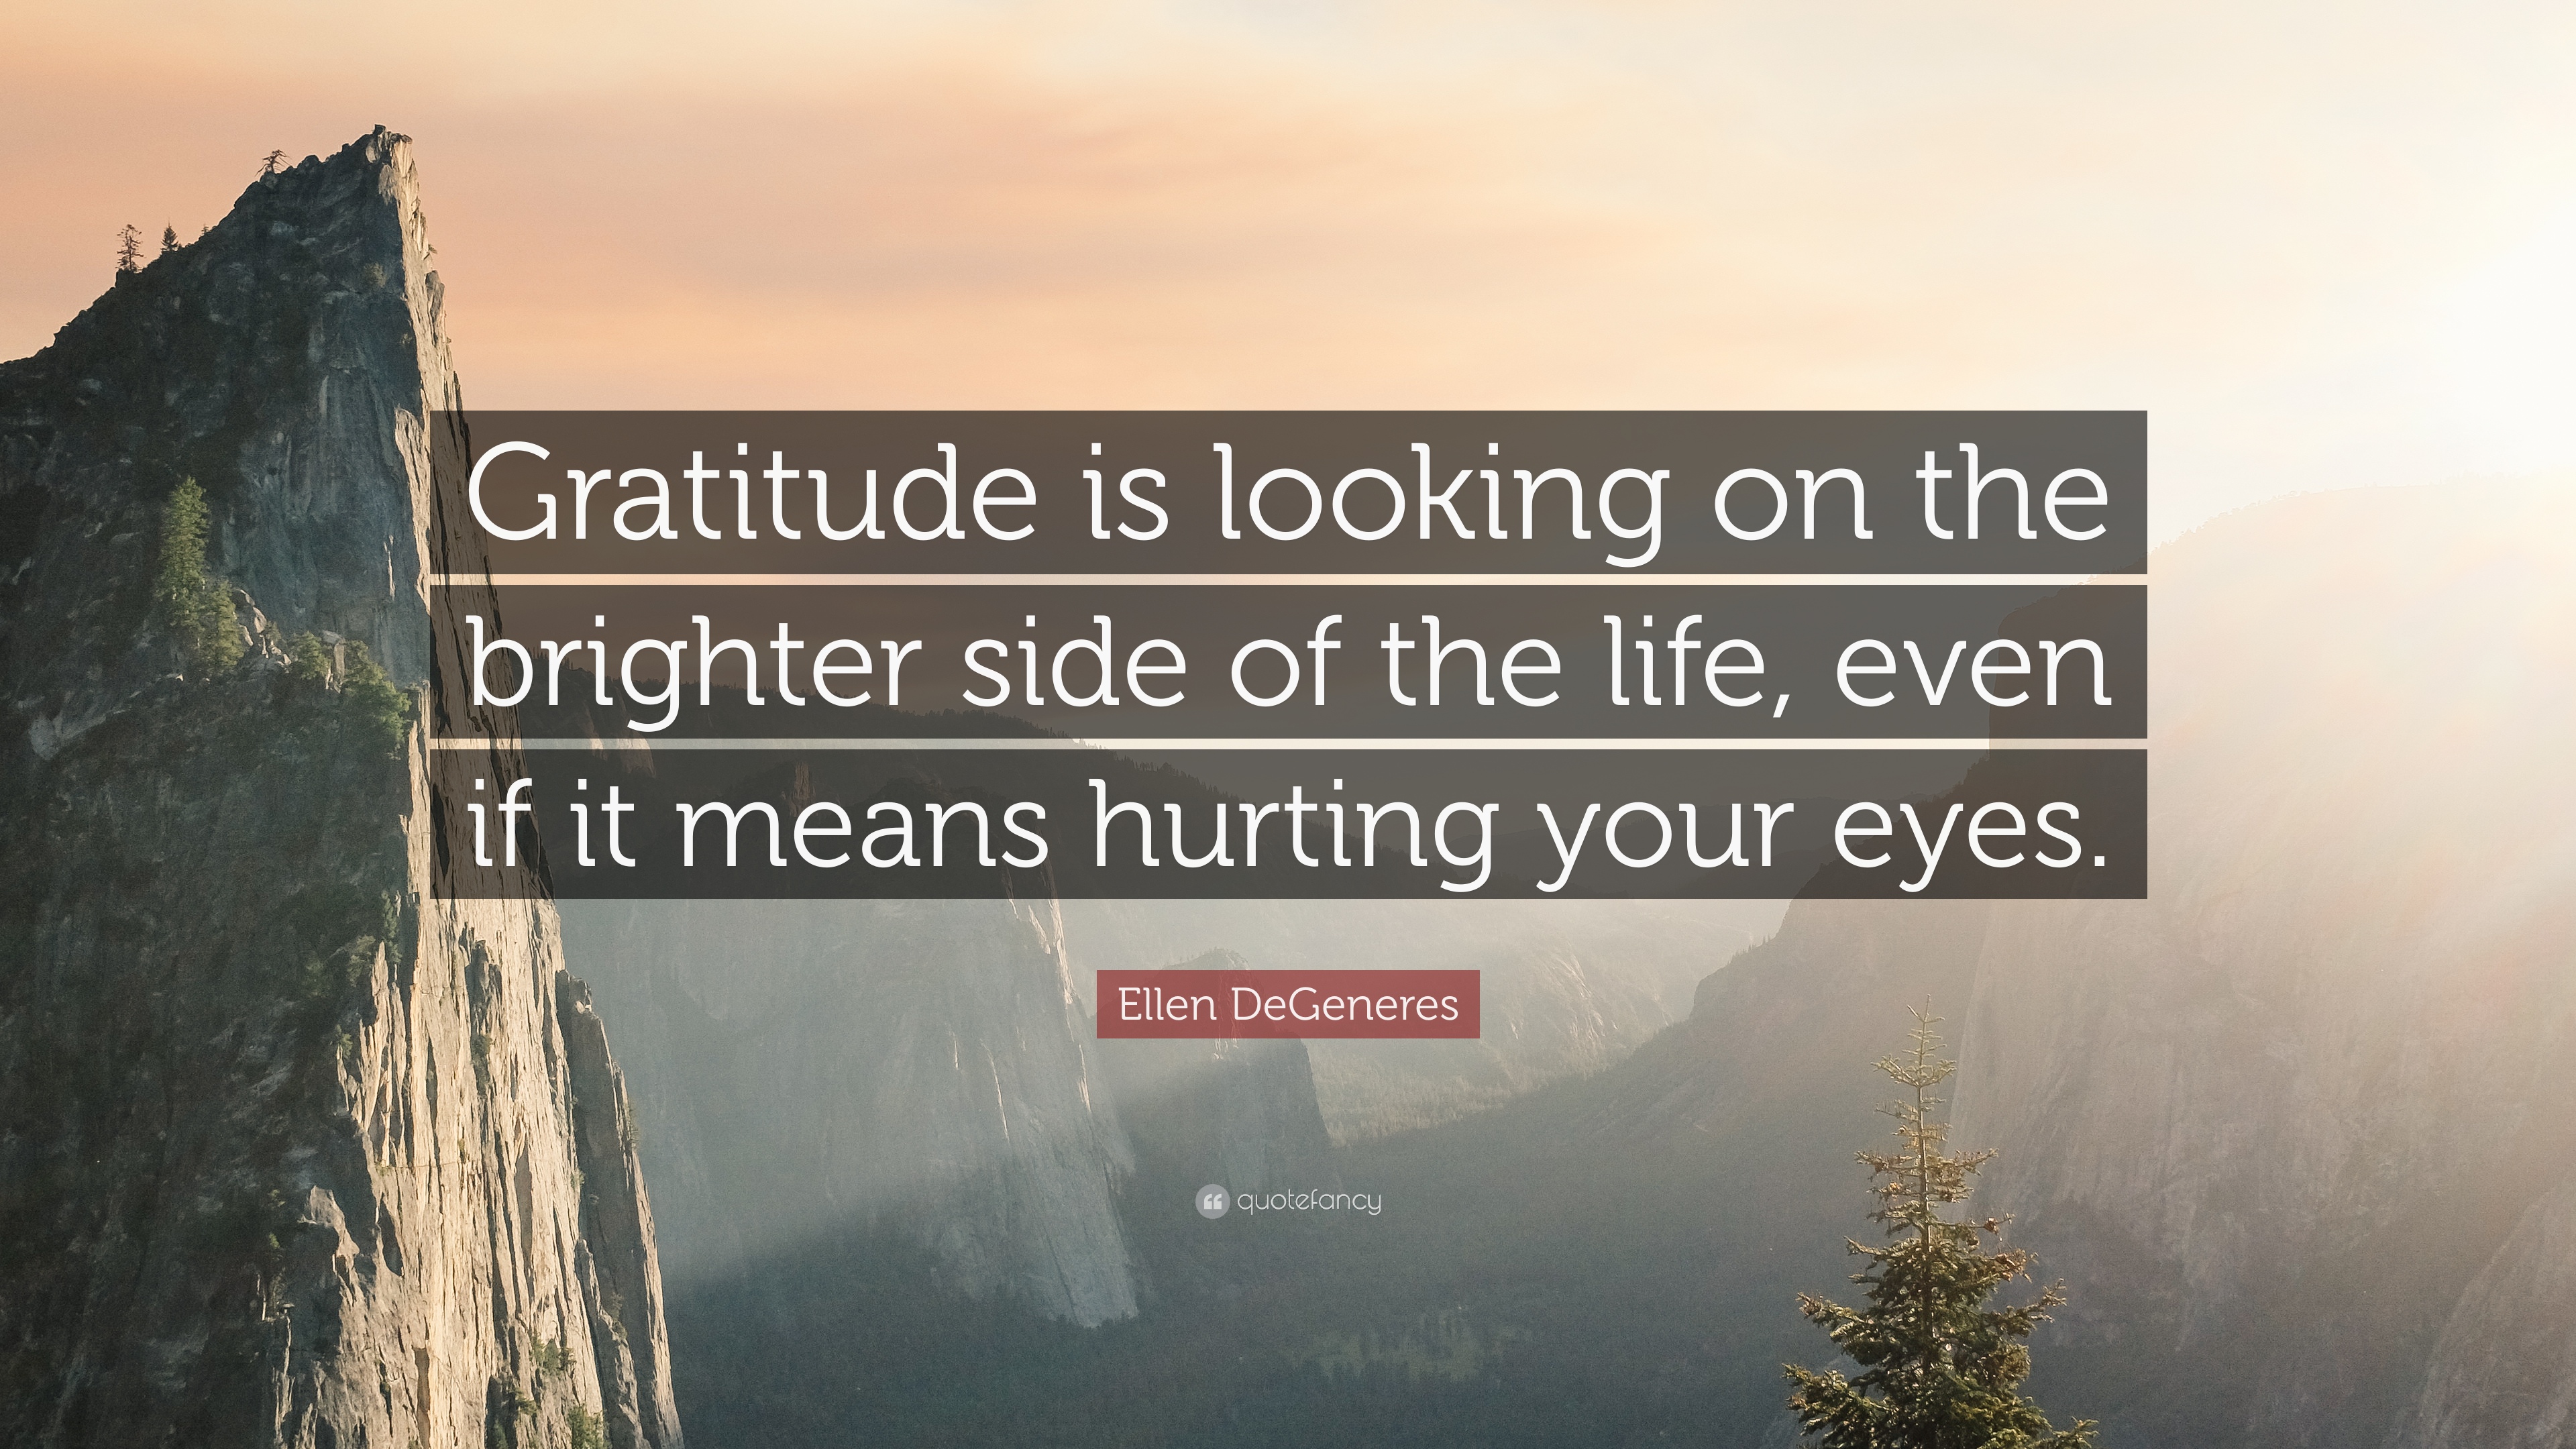 Ellen DeGeneres Quote: “Gratitude is looking on the brighter side of ...